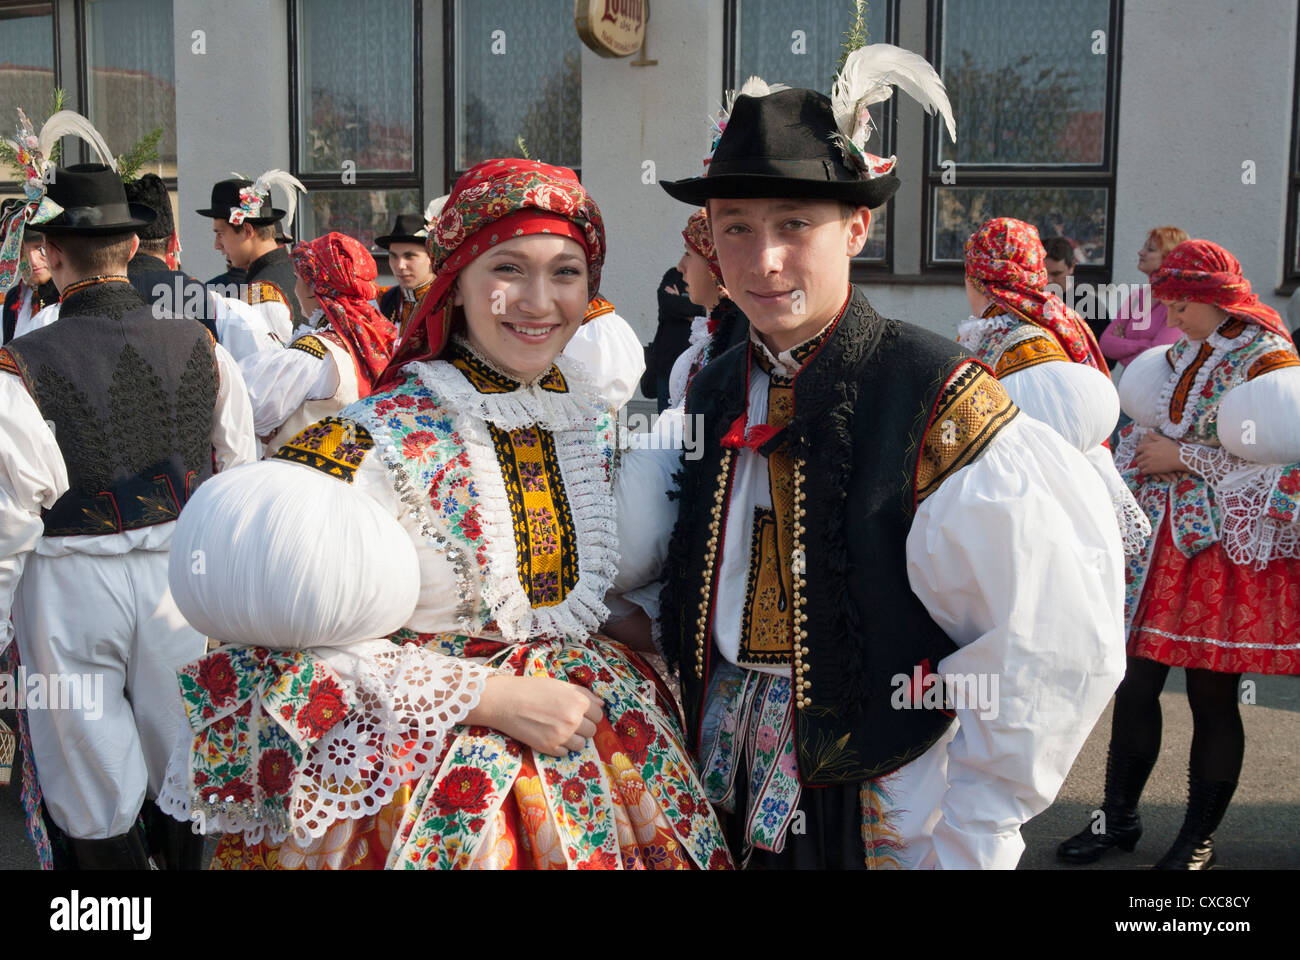 La femme et l'homme portant un costume folklorique pendant l'automne robe de fête avec Law, Festival, Brnensko Borsice, République Tchèque, Europe Banque D'Images